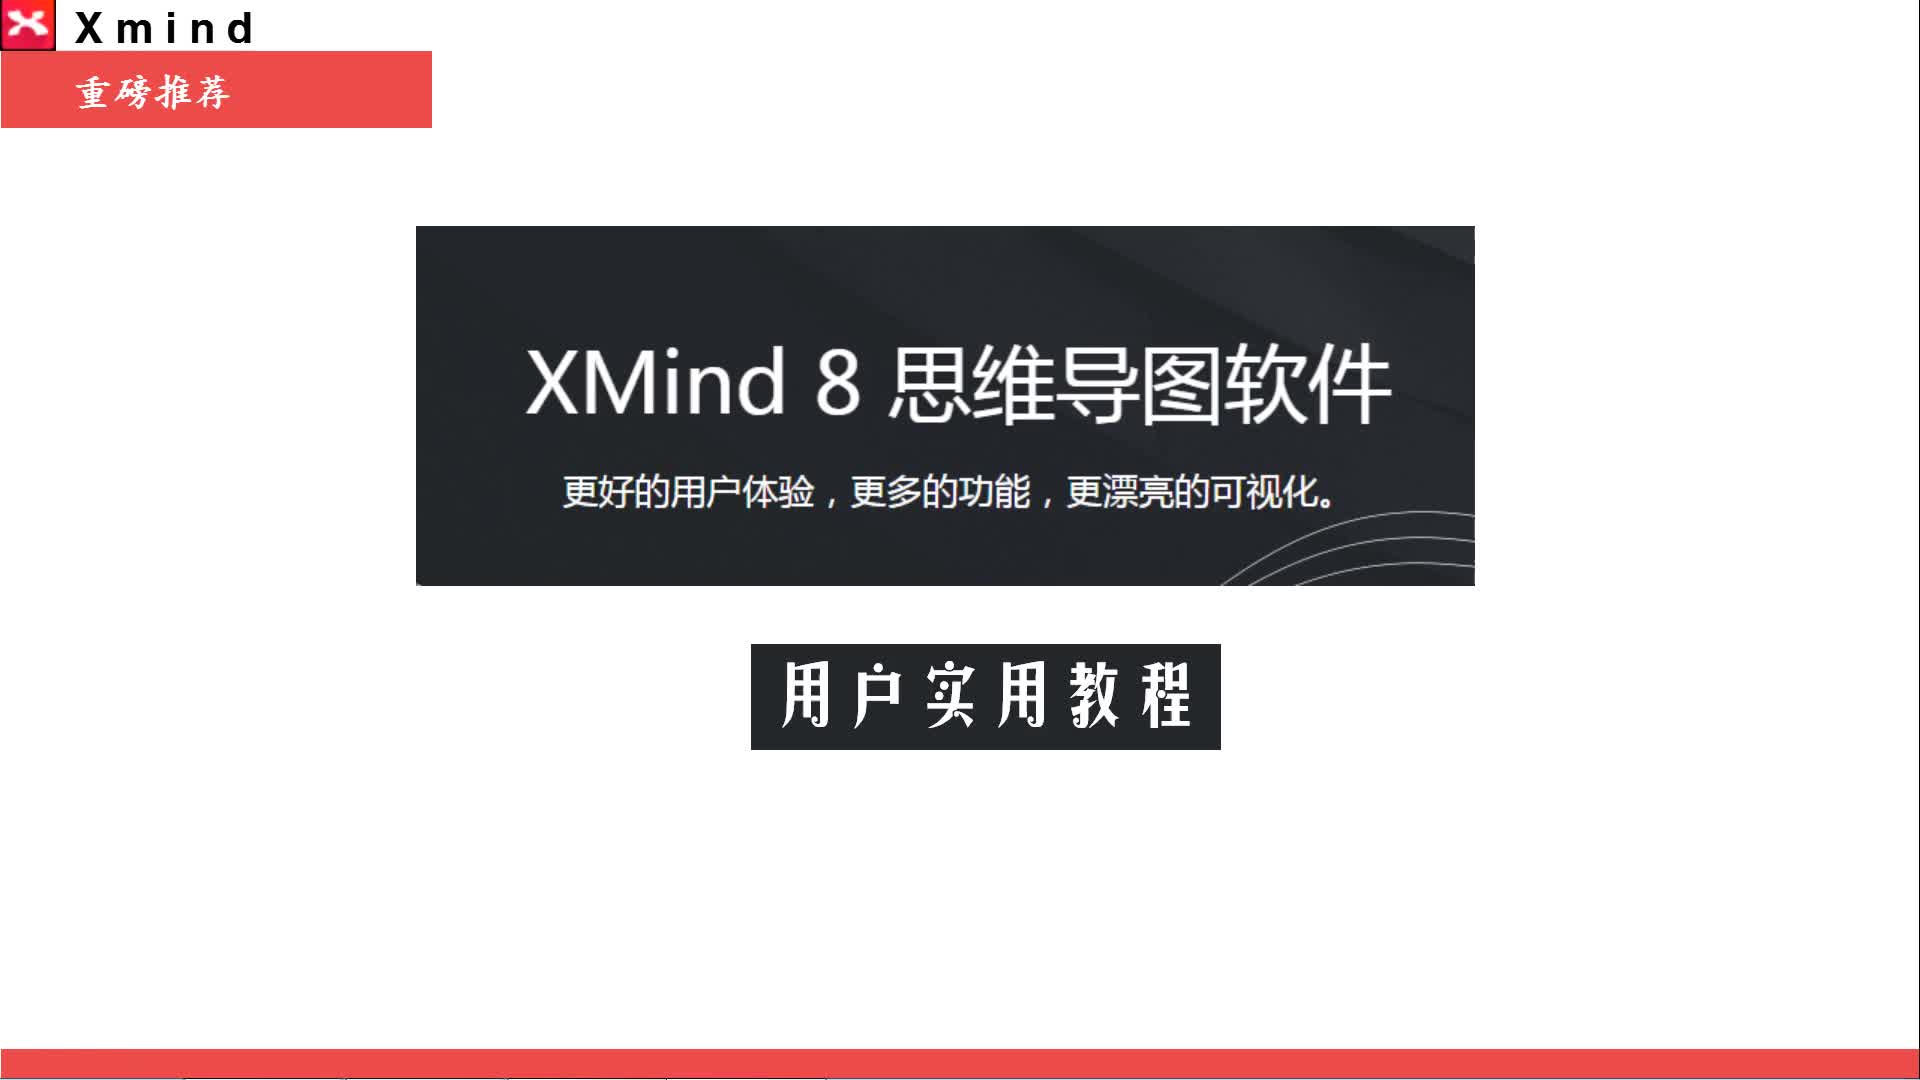 高效脑图:xmind8 零基础专项班